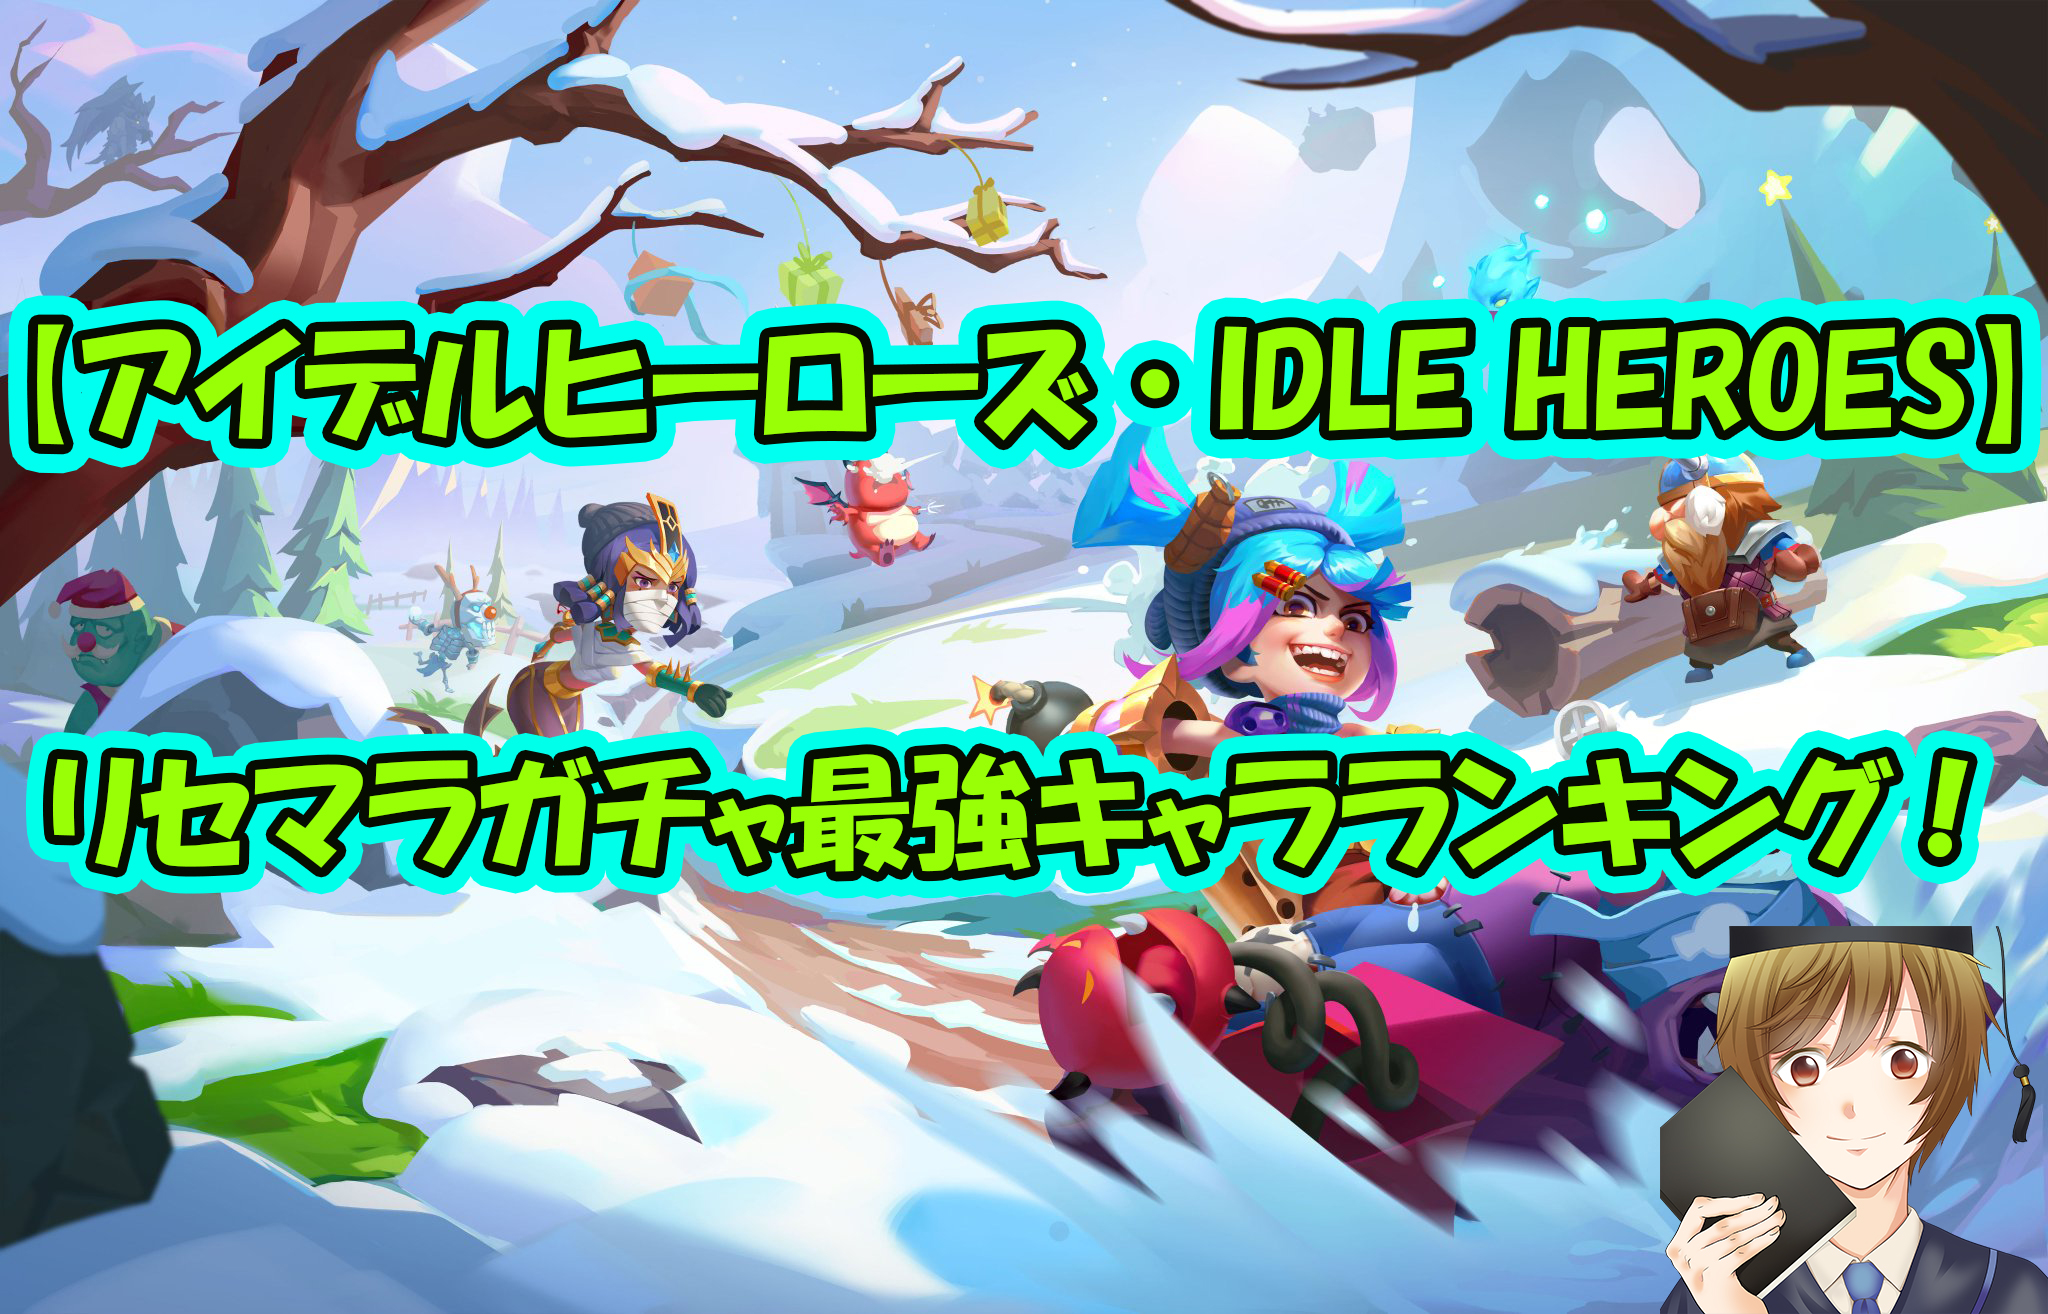 【アイデルヒーローズ・IDLE HEROES】リセマラガチャ最強キャラランキング!